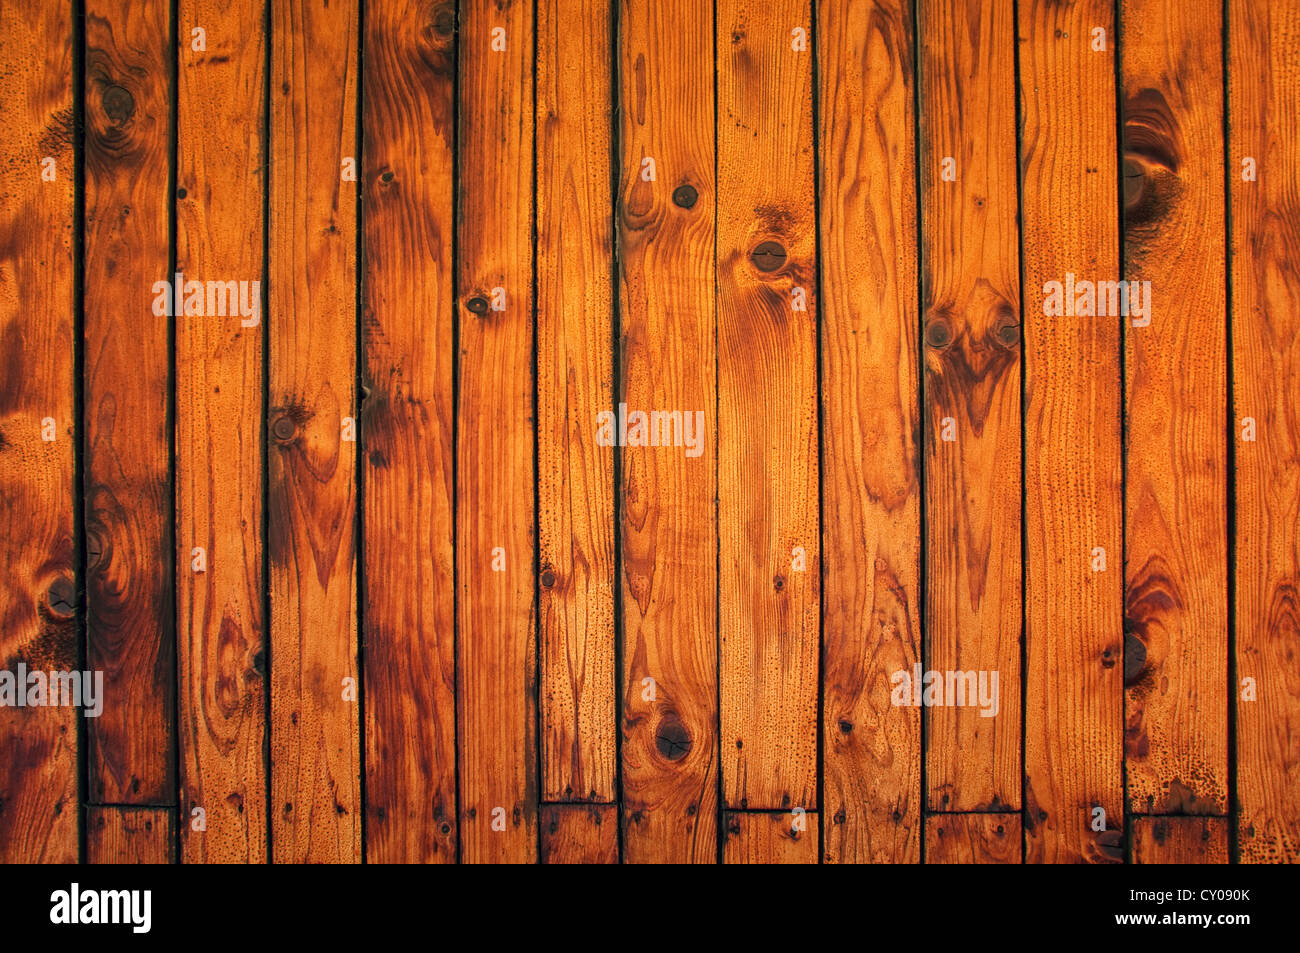 La texture en bois, de vieilles planches en bois. Image peut être utilisé comme arrière-plan pour votre conception. Banque D'Images